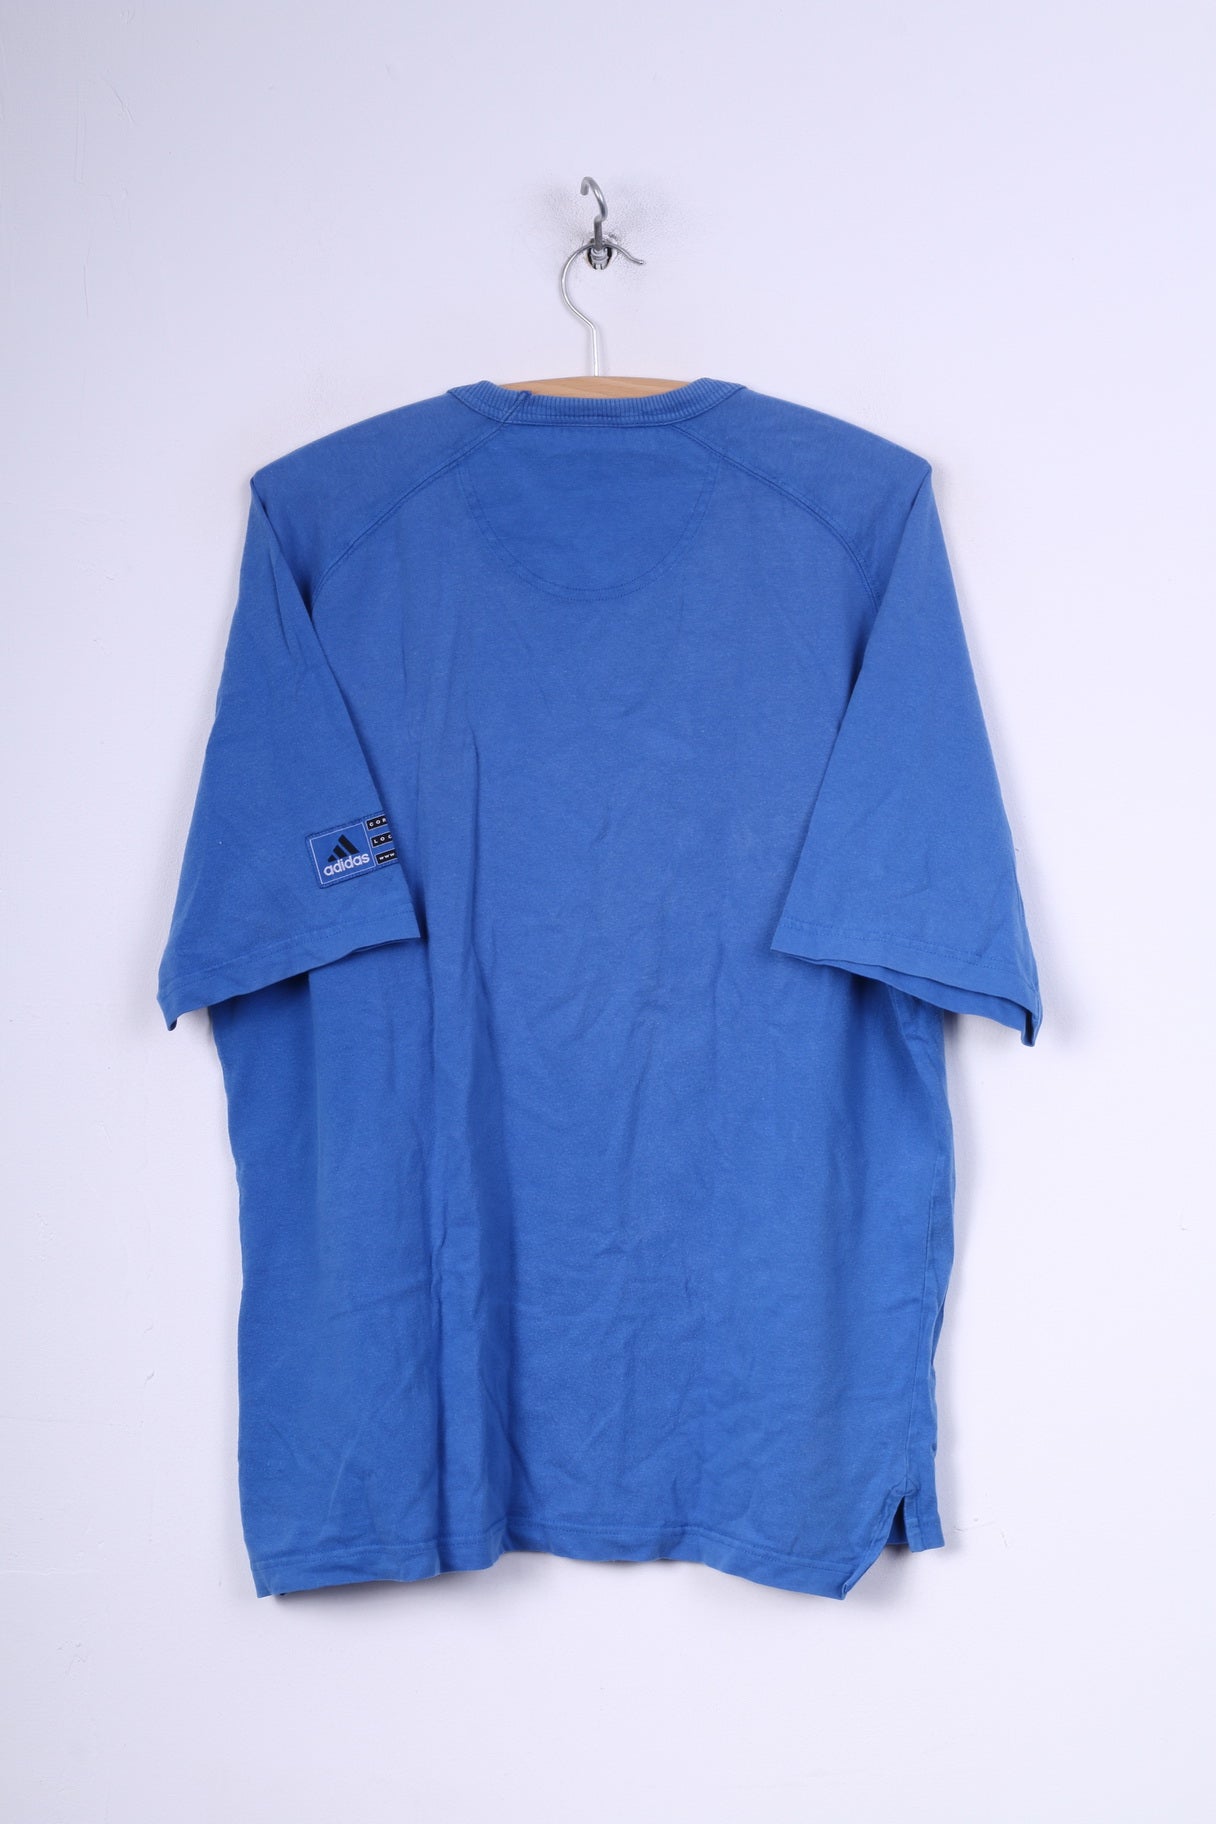 Adidas Mens 40/42 M T-Shirt Graphic Blue Crew Neck Cotton Vintage